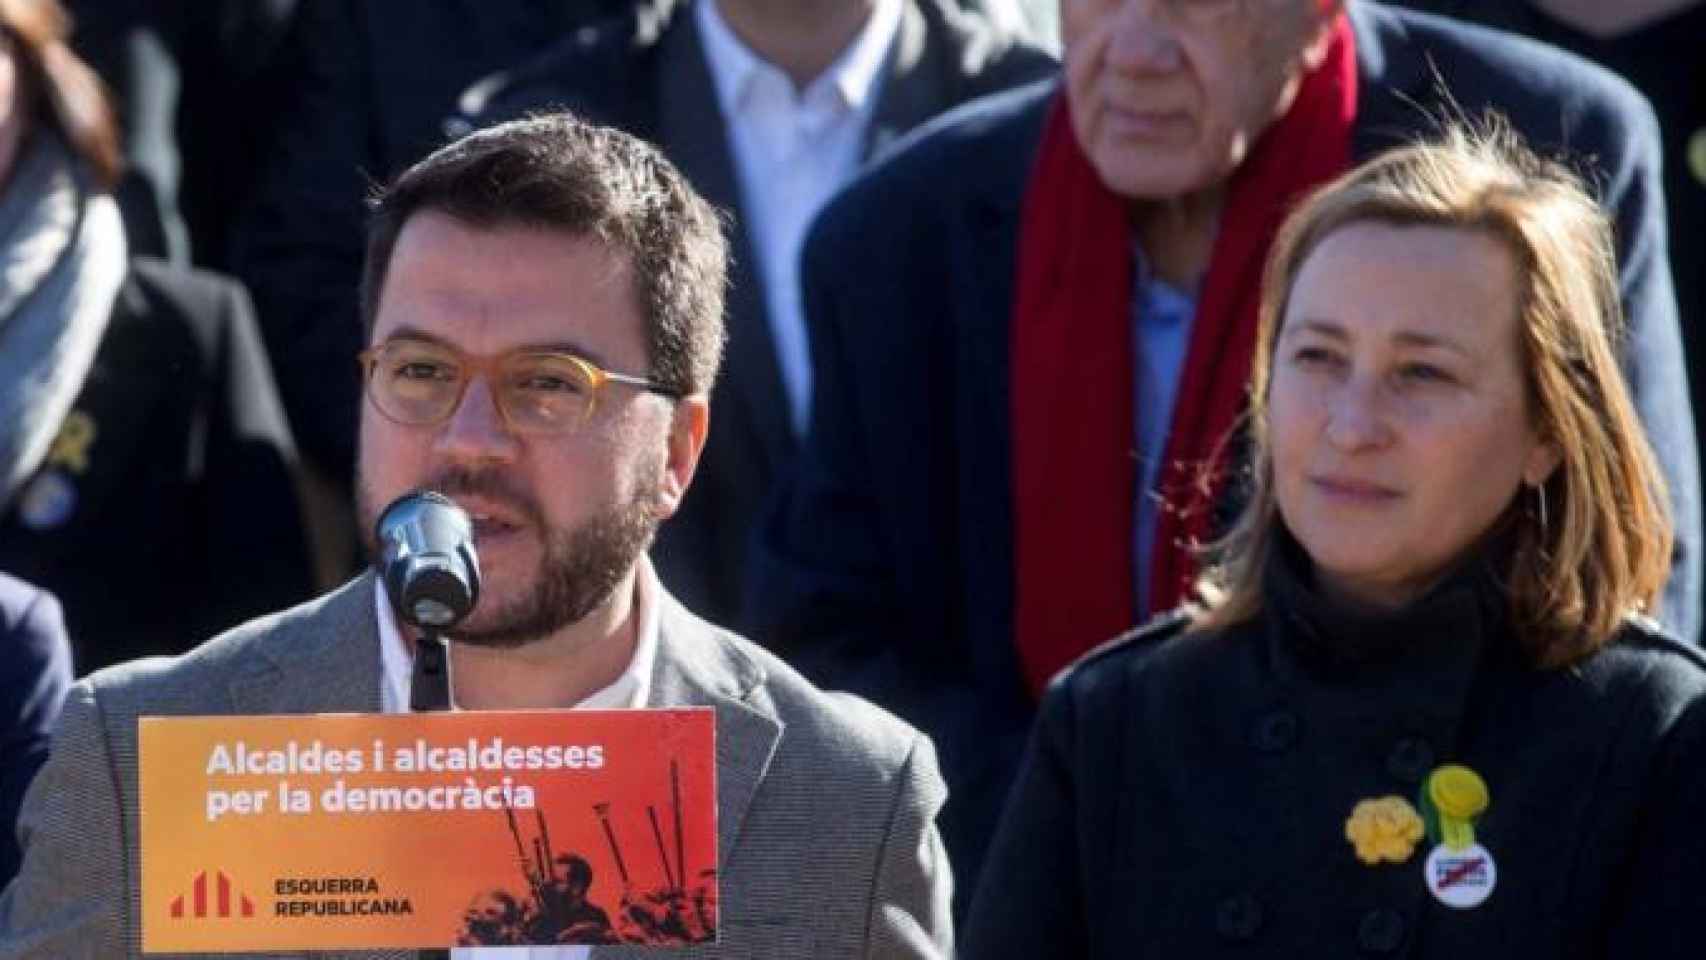 La alcaldesa de Sant Vicenç dels Horts, Maite Aymerich (d, ERC), junto a Pere Aragonès, vicepresidente del Govern, en un acto de los republicanos / CG